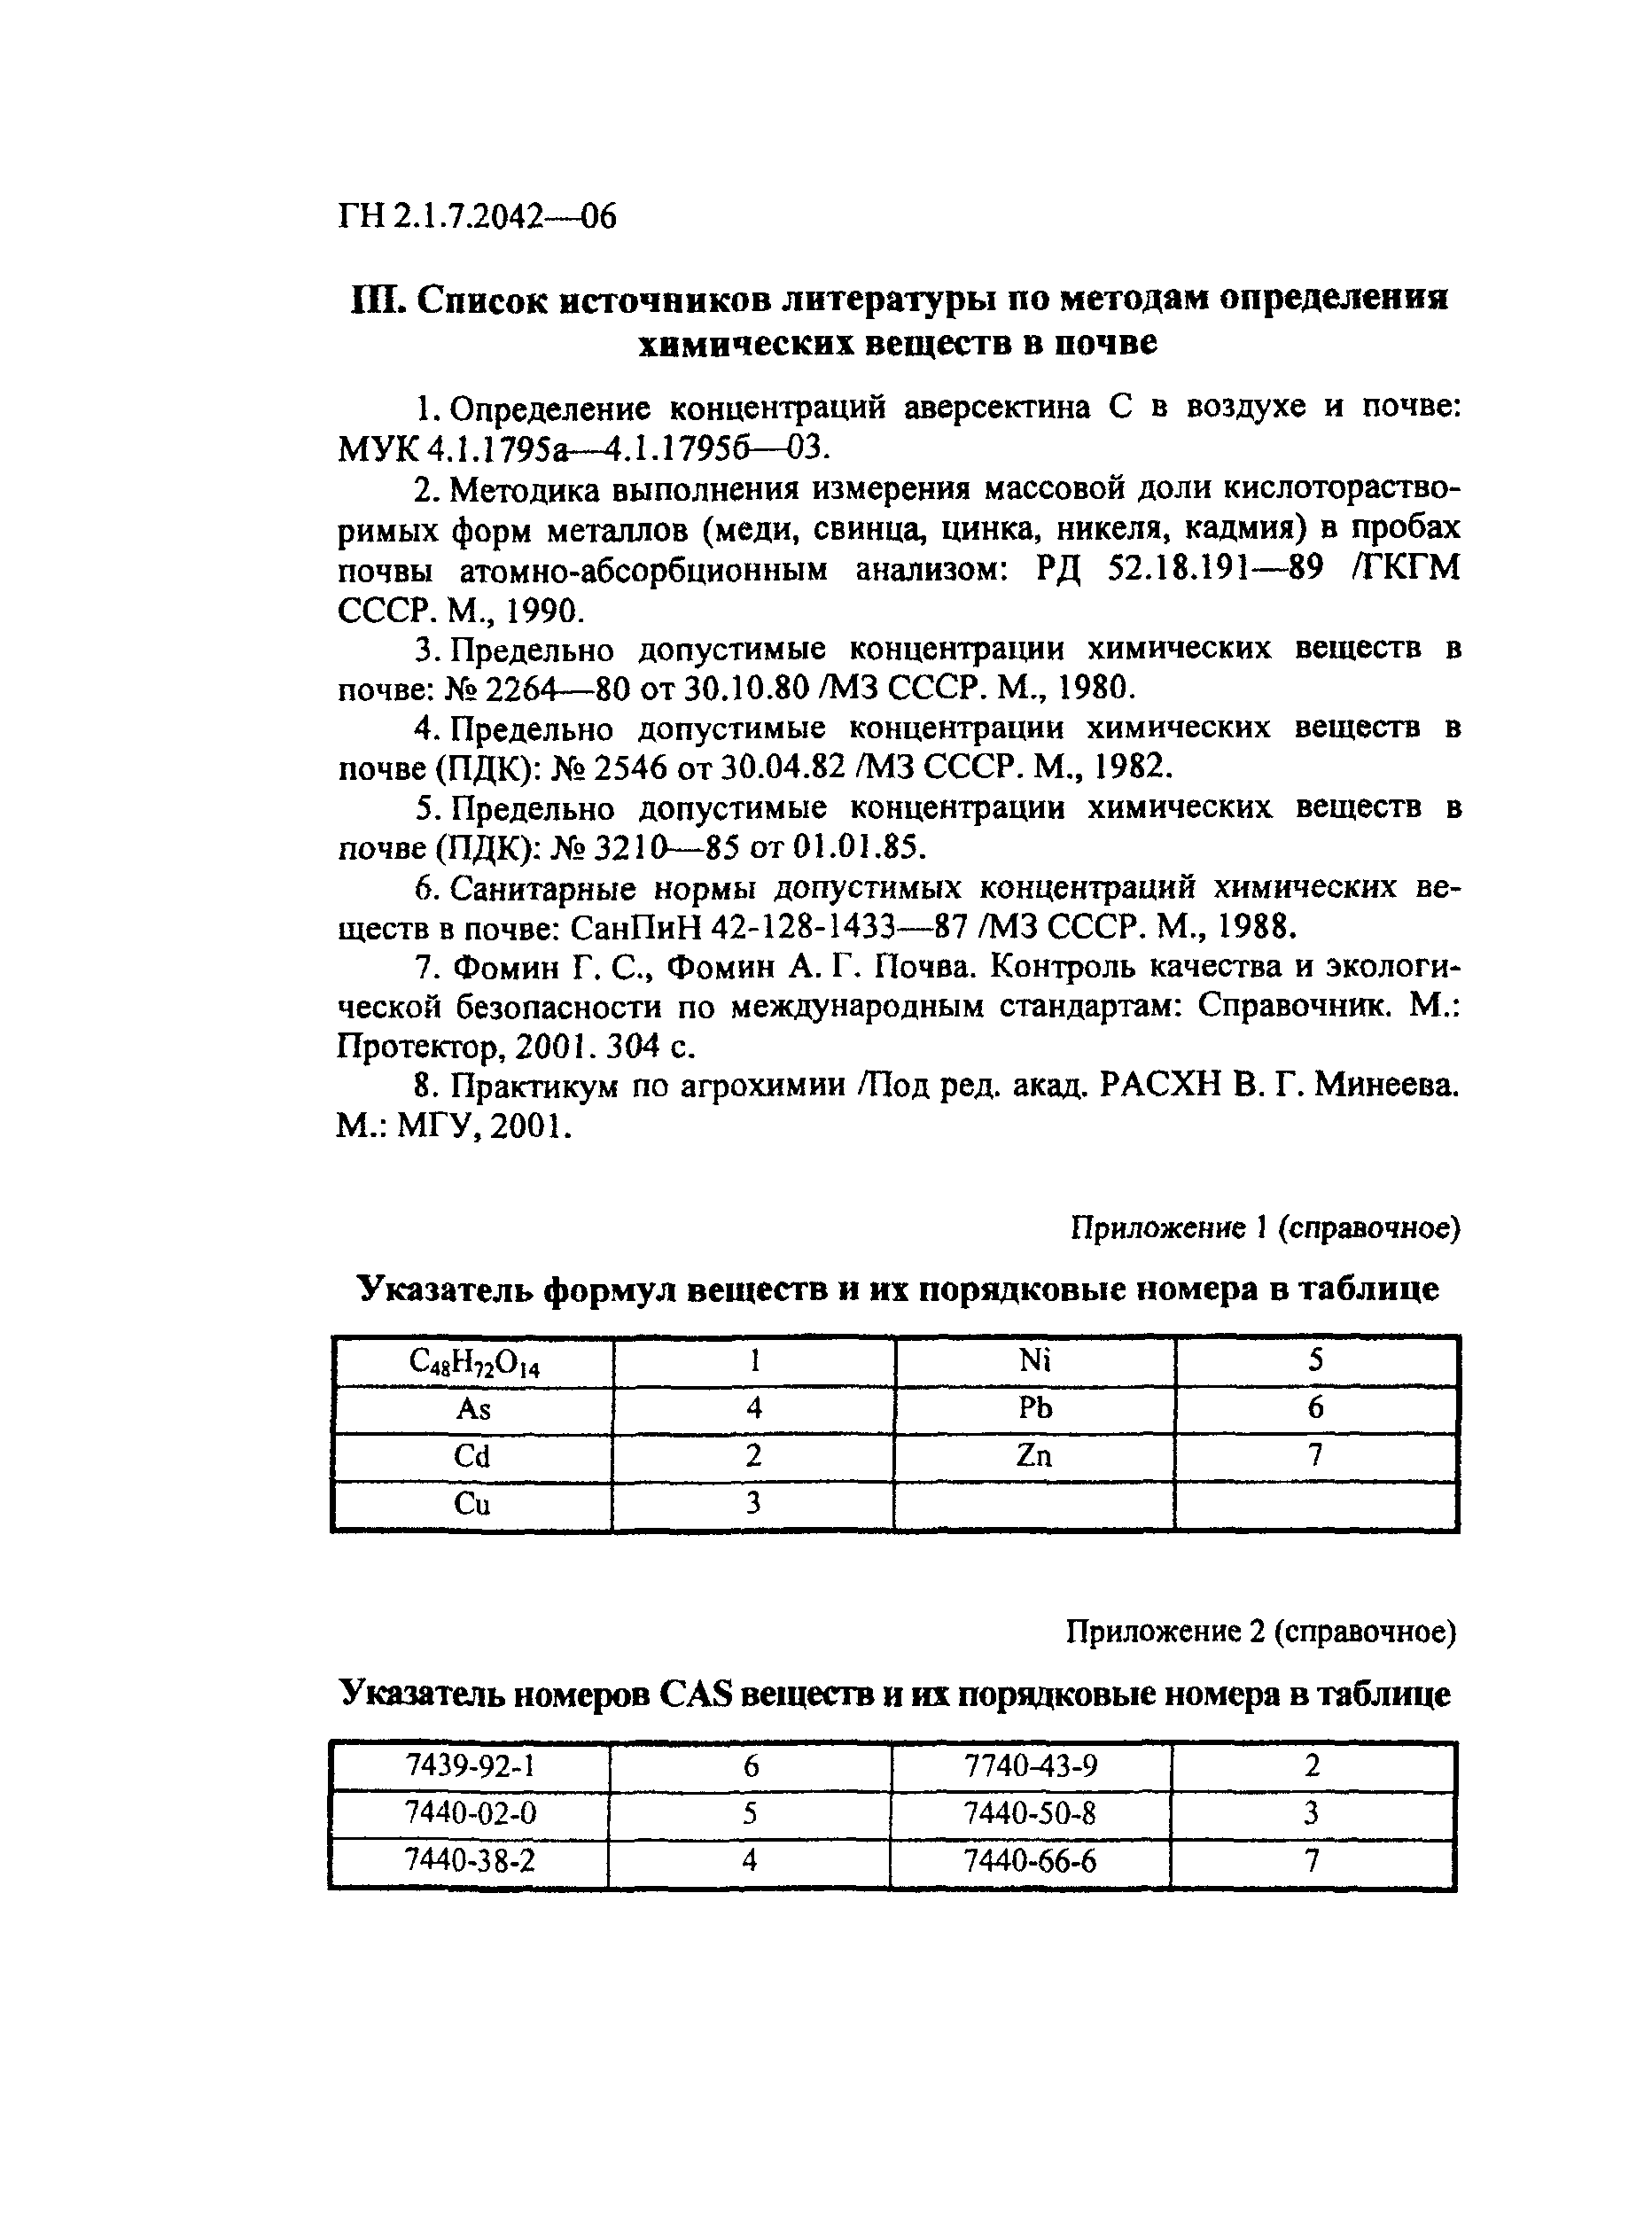 ГН 2.1.7.2042-06